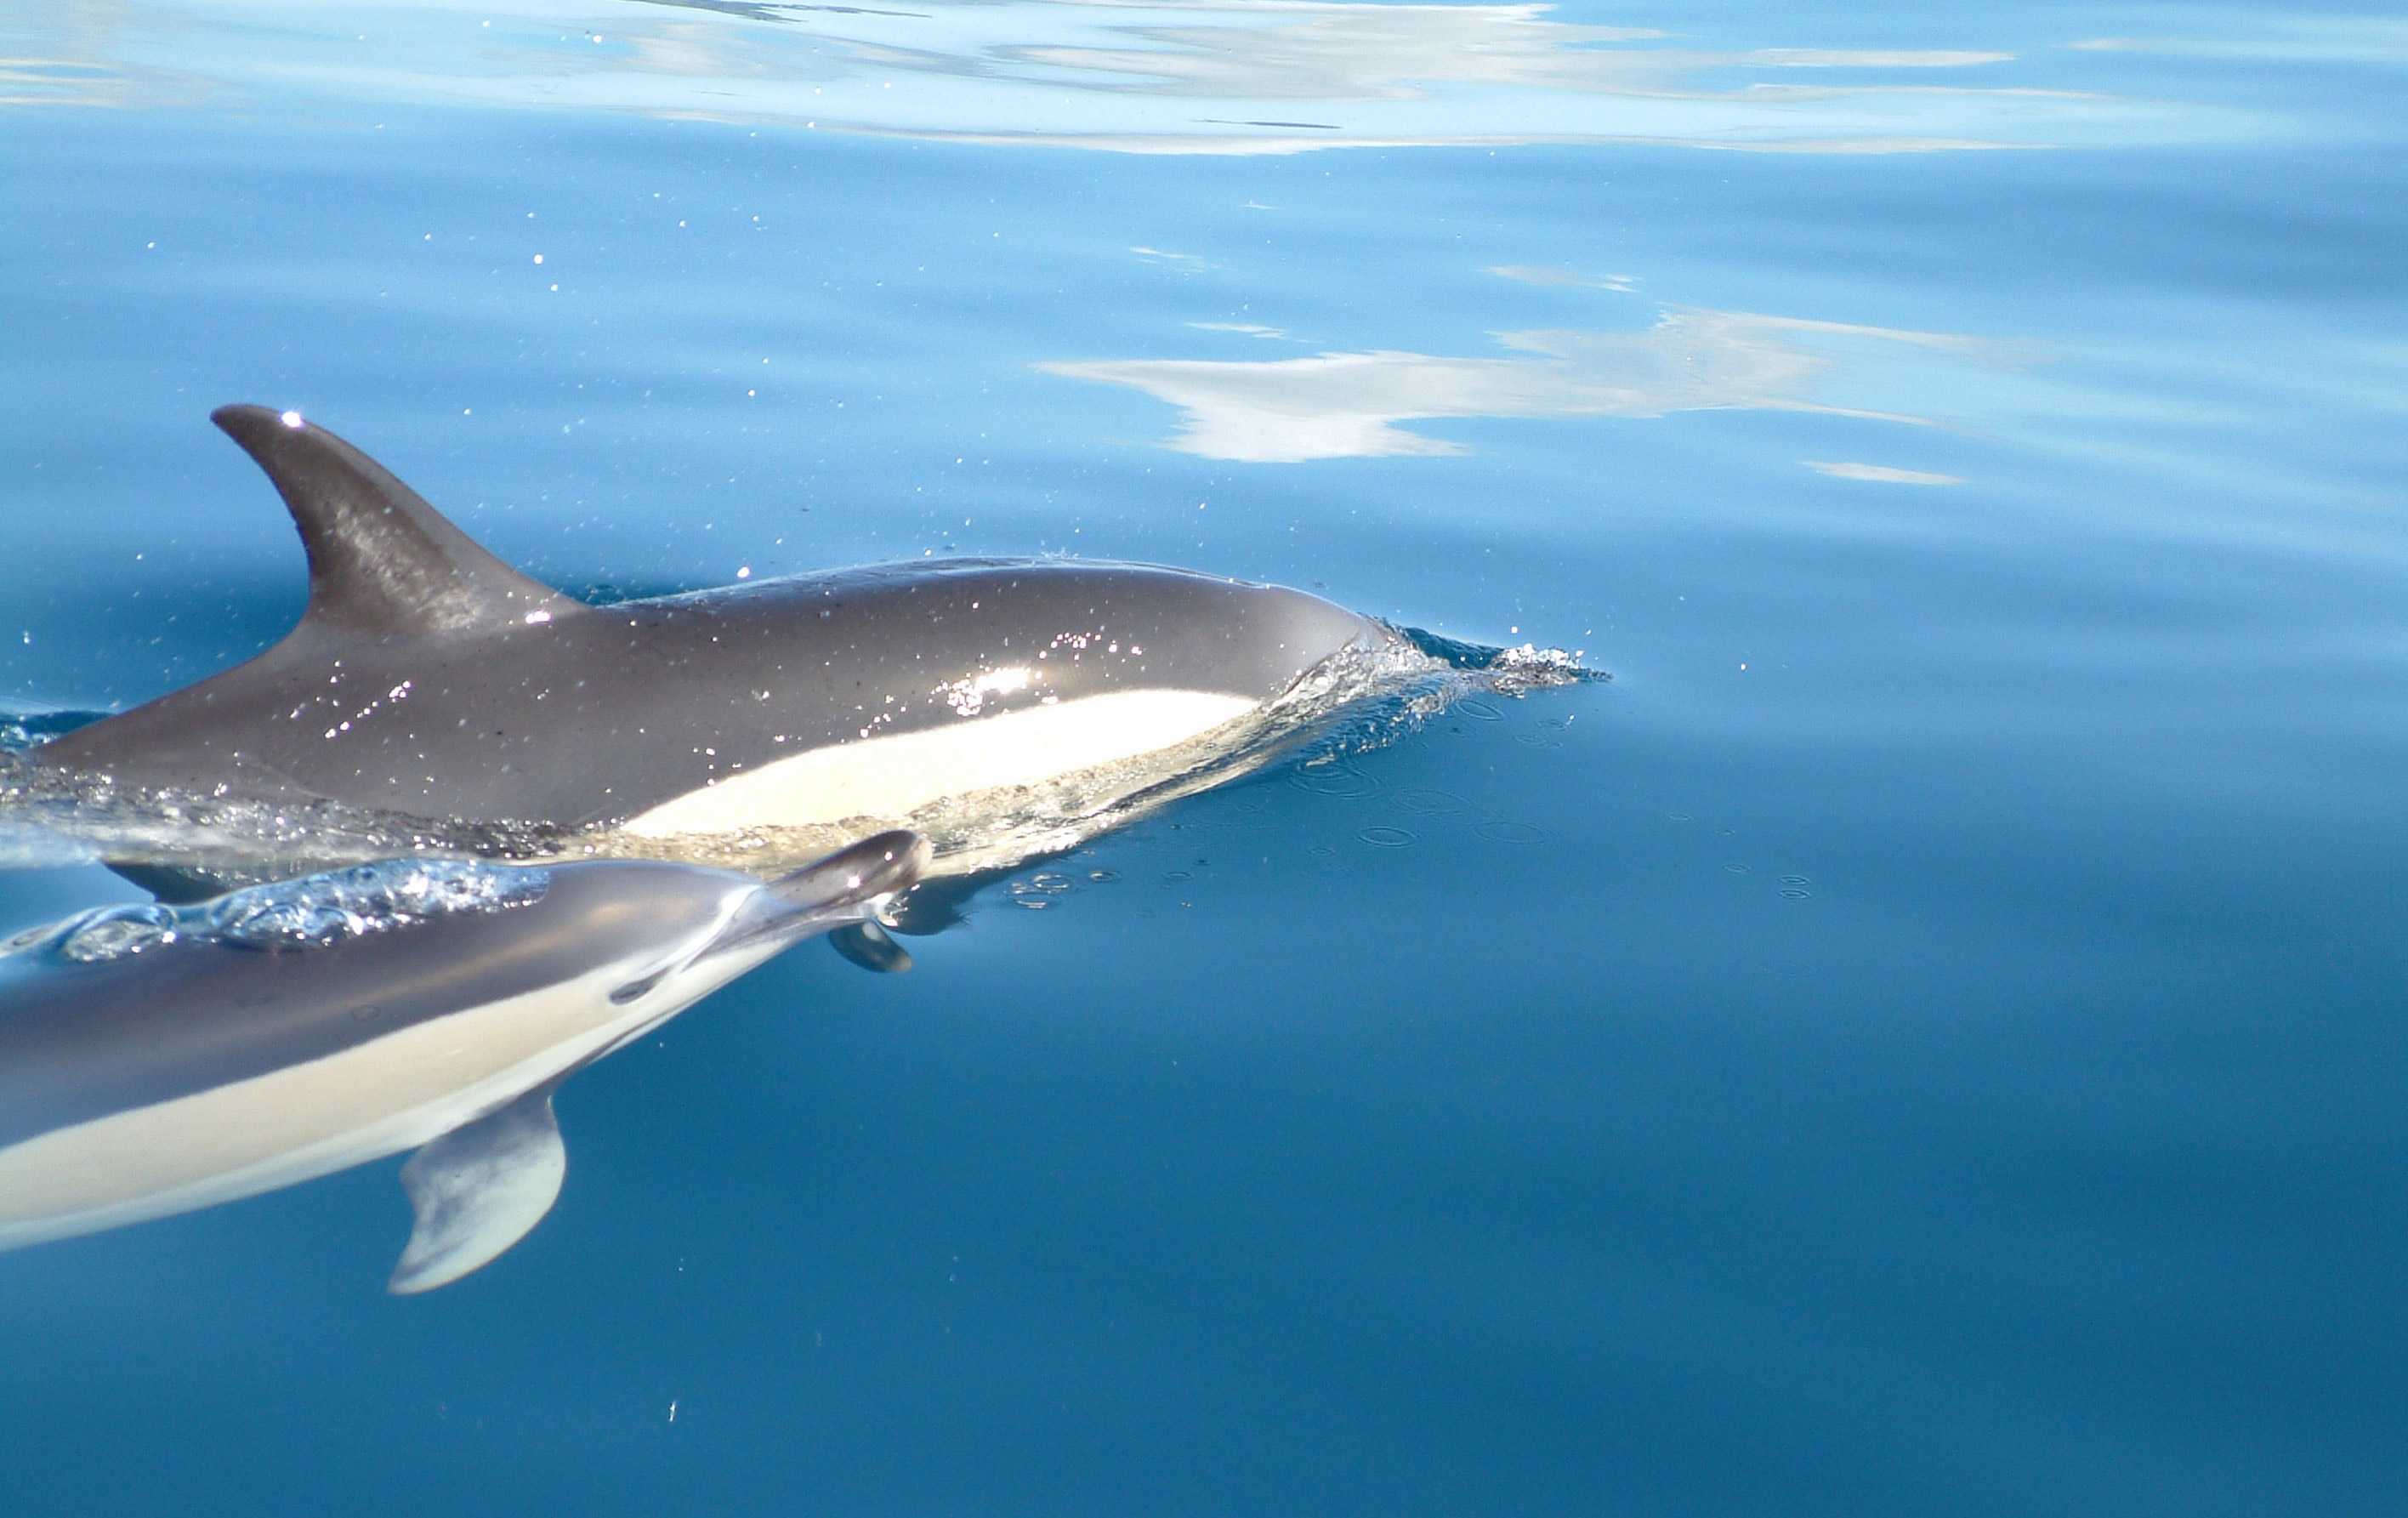 Сообщение о дельфине - описание, характеристика и особенности поведения млекопитающего